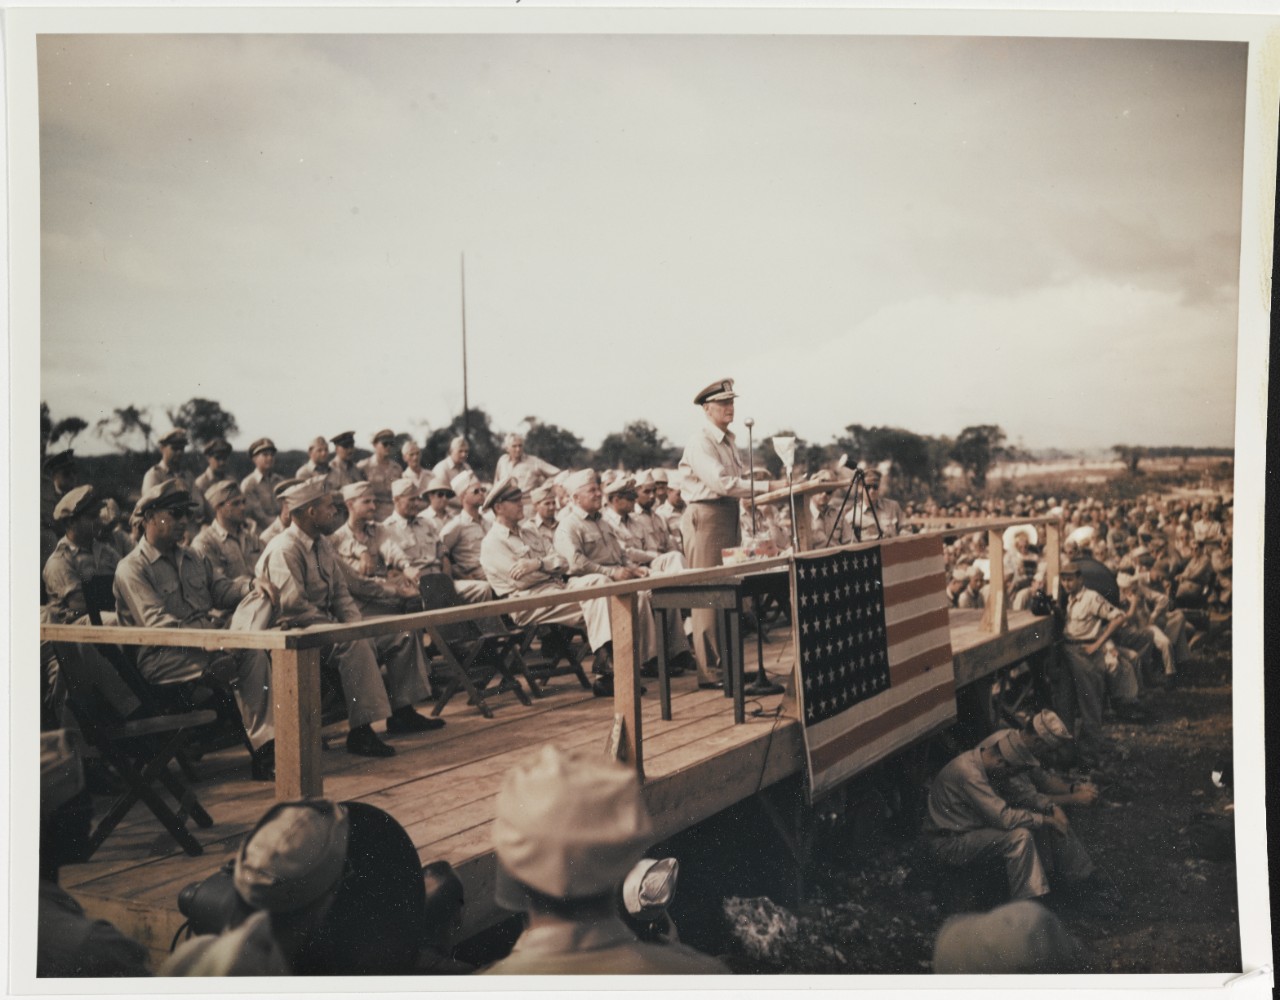 Fleet Admiral Chester W. Nimitz at Northwest Field, Guam, 1 June 1945